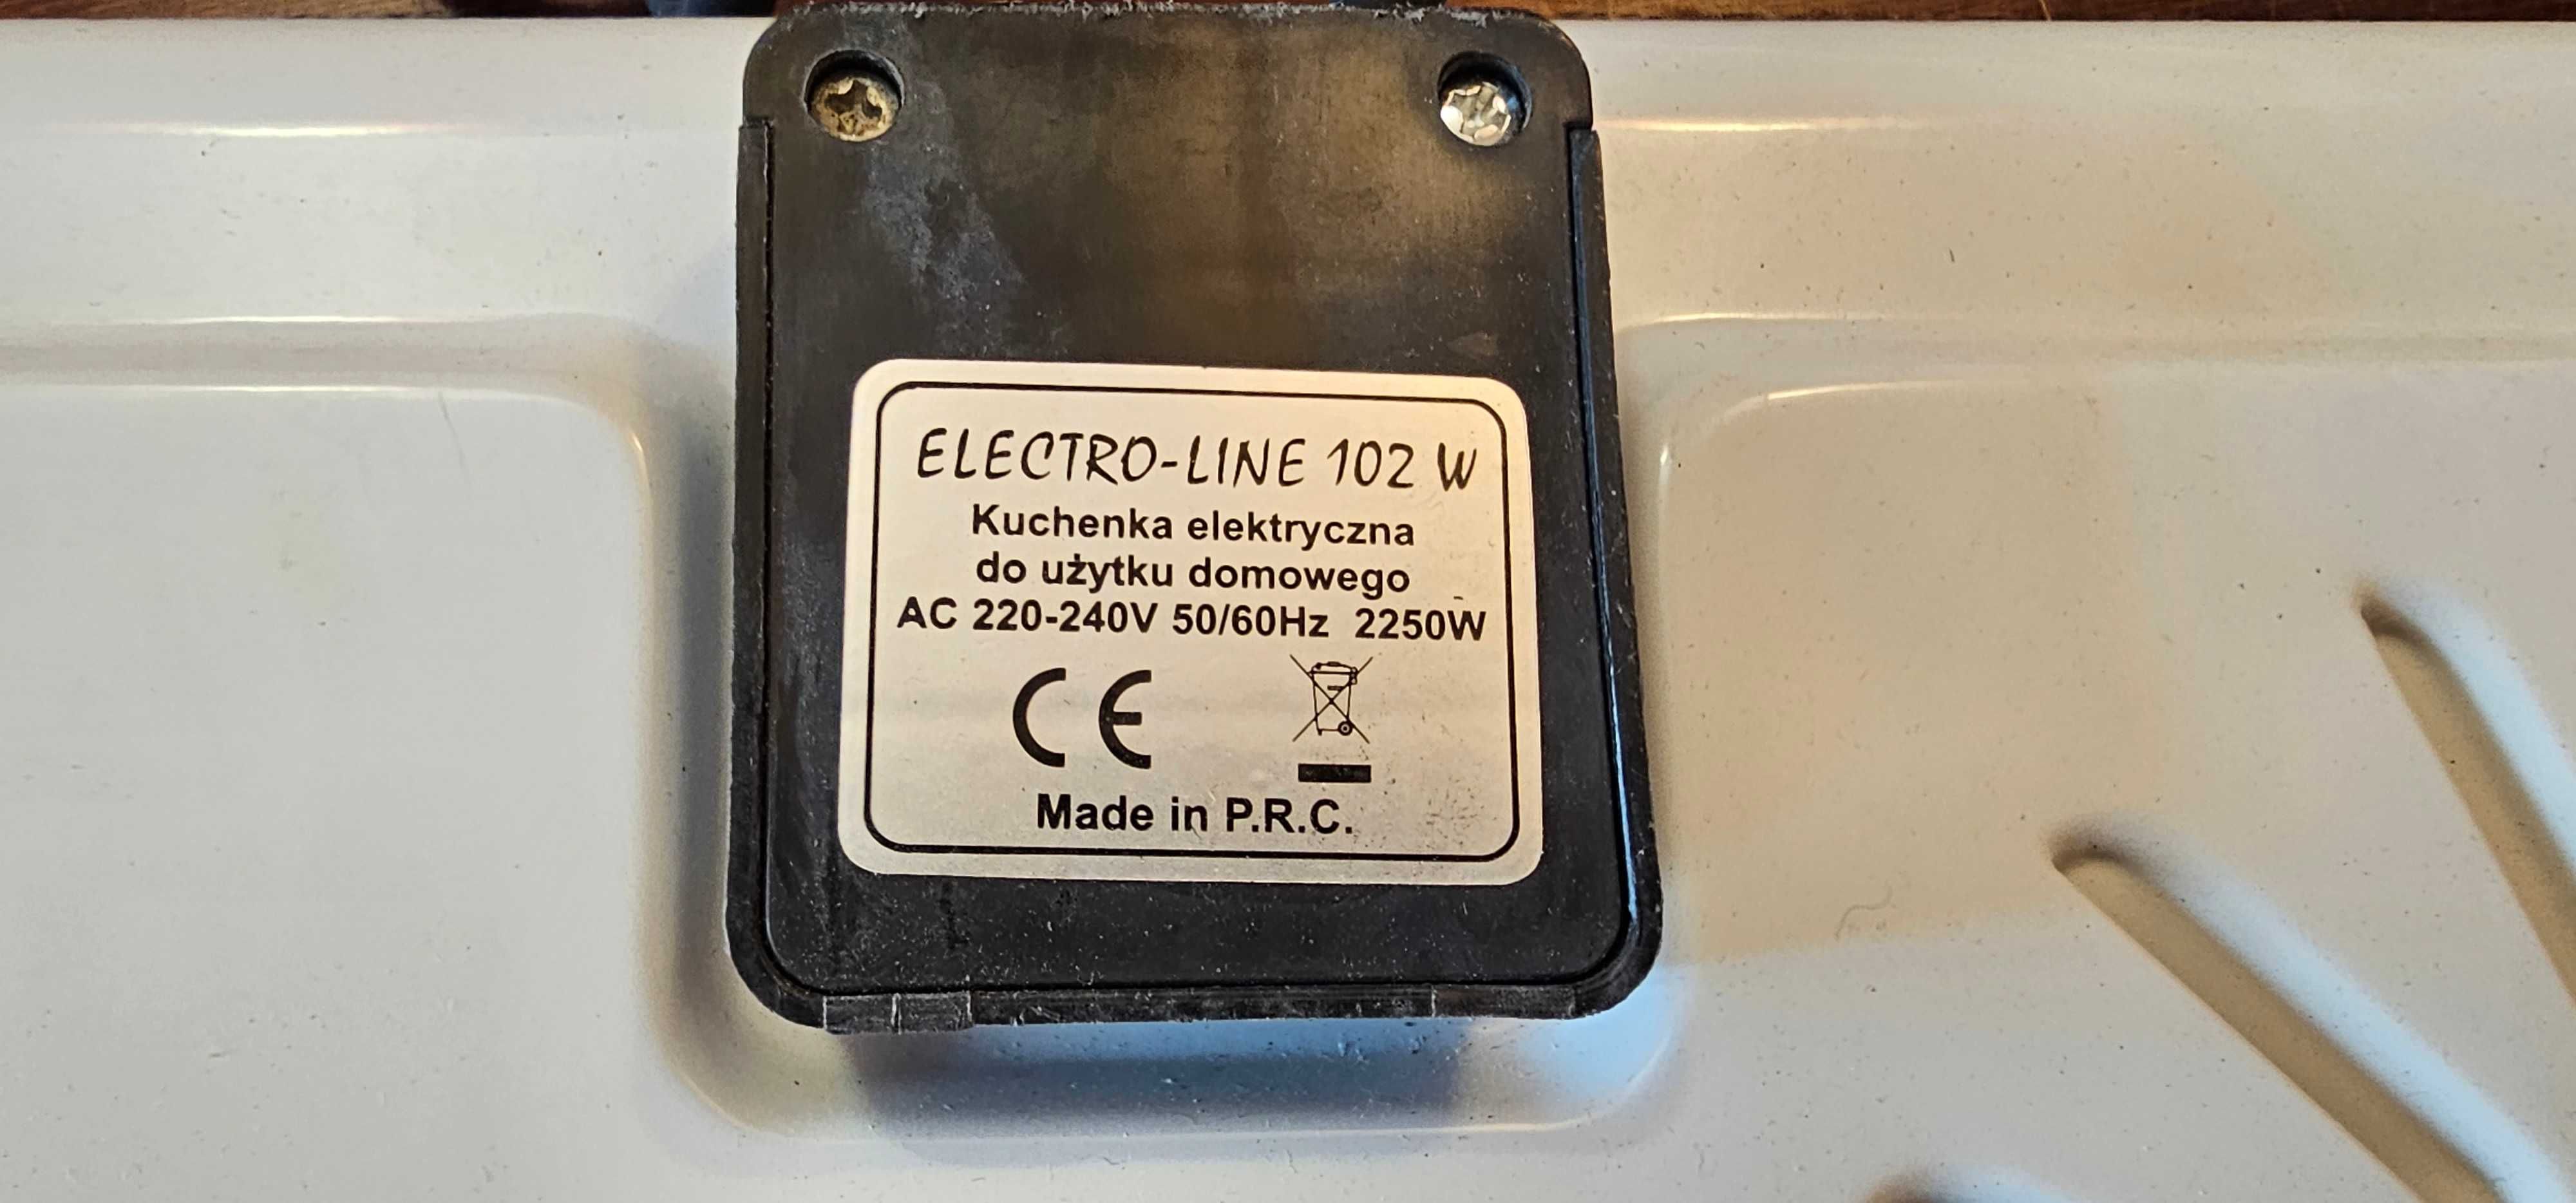 Kuchenka Elektryczna Electro-line 102W